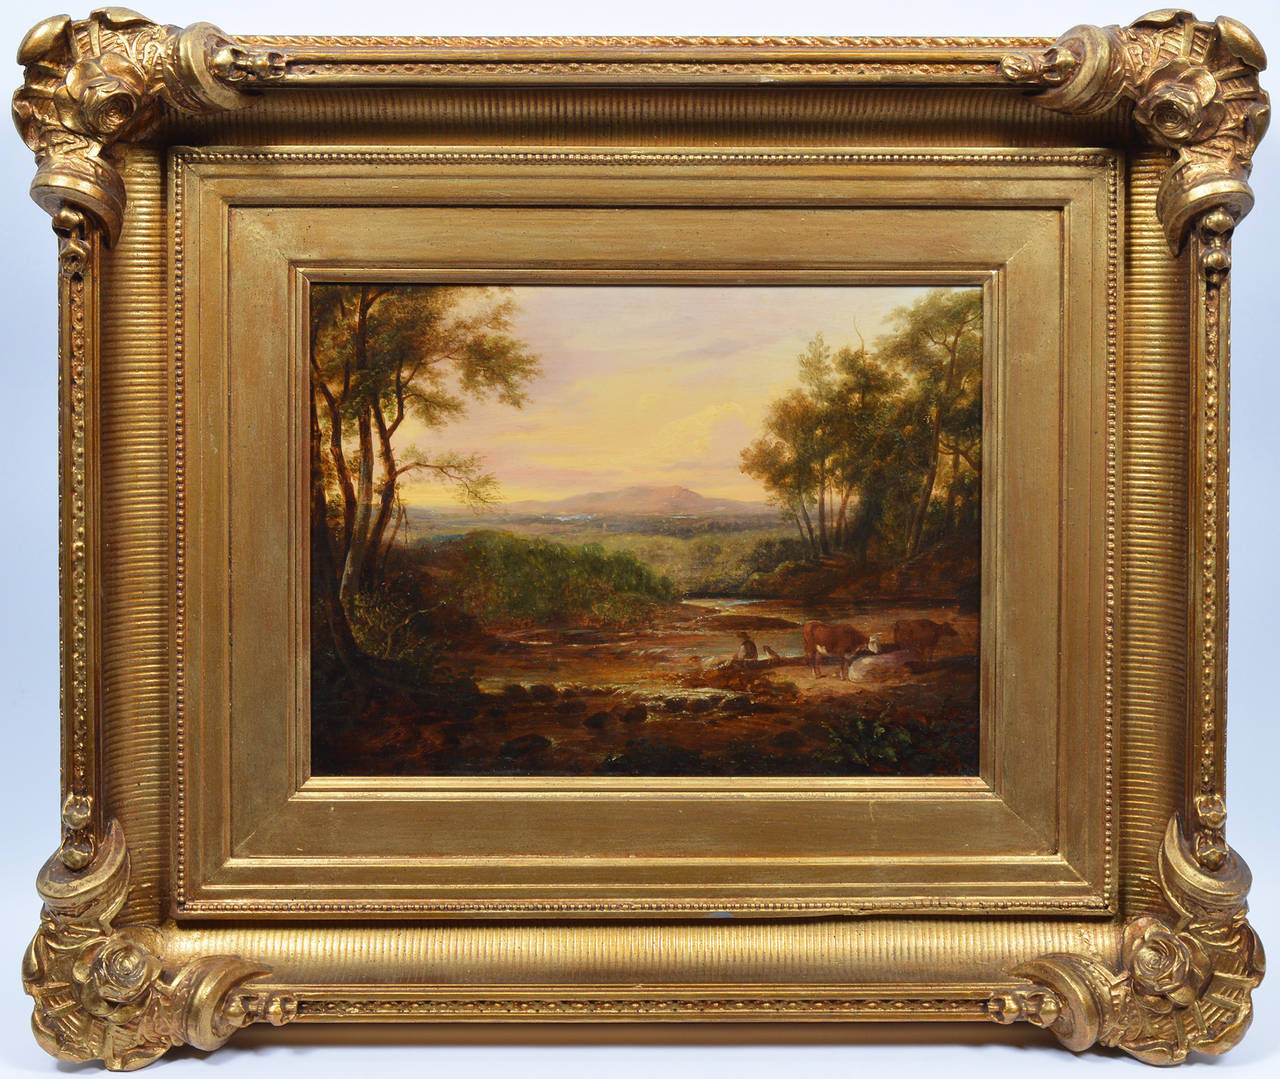 Unknown Landscape Painting - Hudson River School Sunset Landscape circa 1850